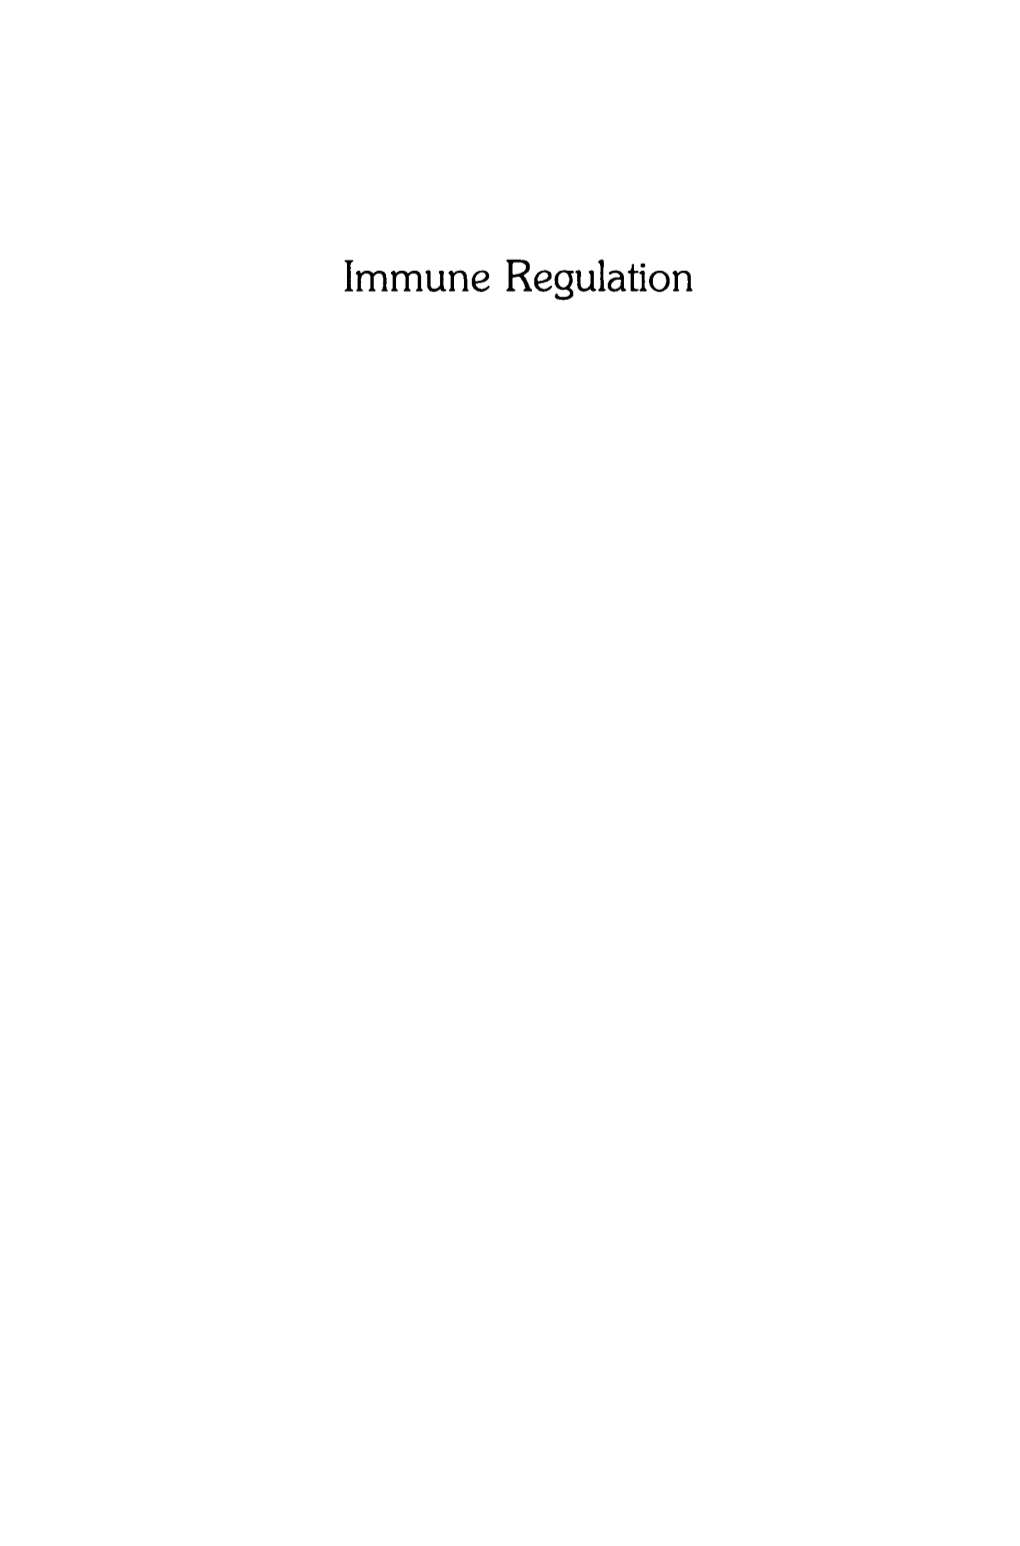 Immune Regulation Experimental Biology and Medicine Immune Regulation, Edited by Marc Feldmann and N